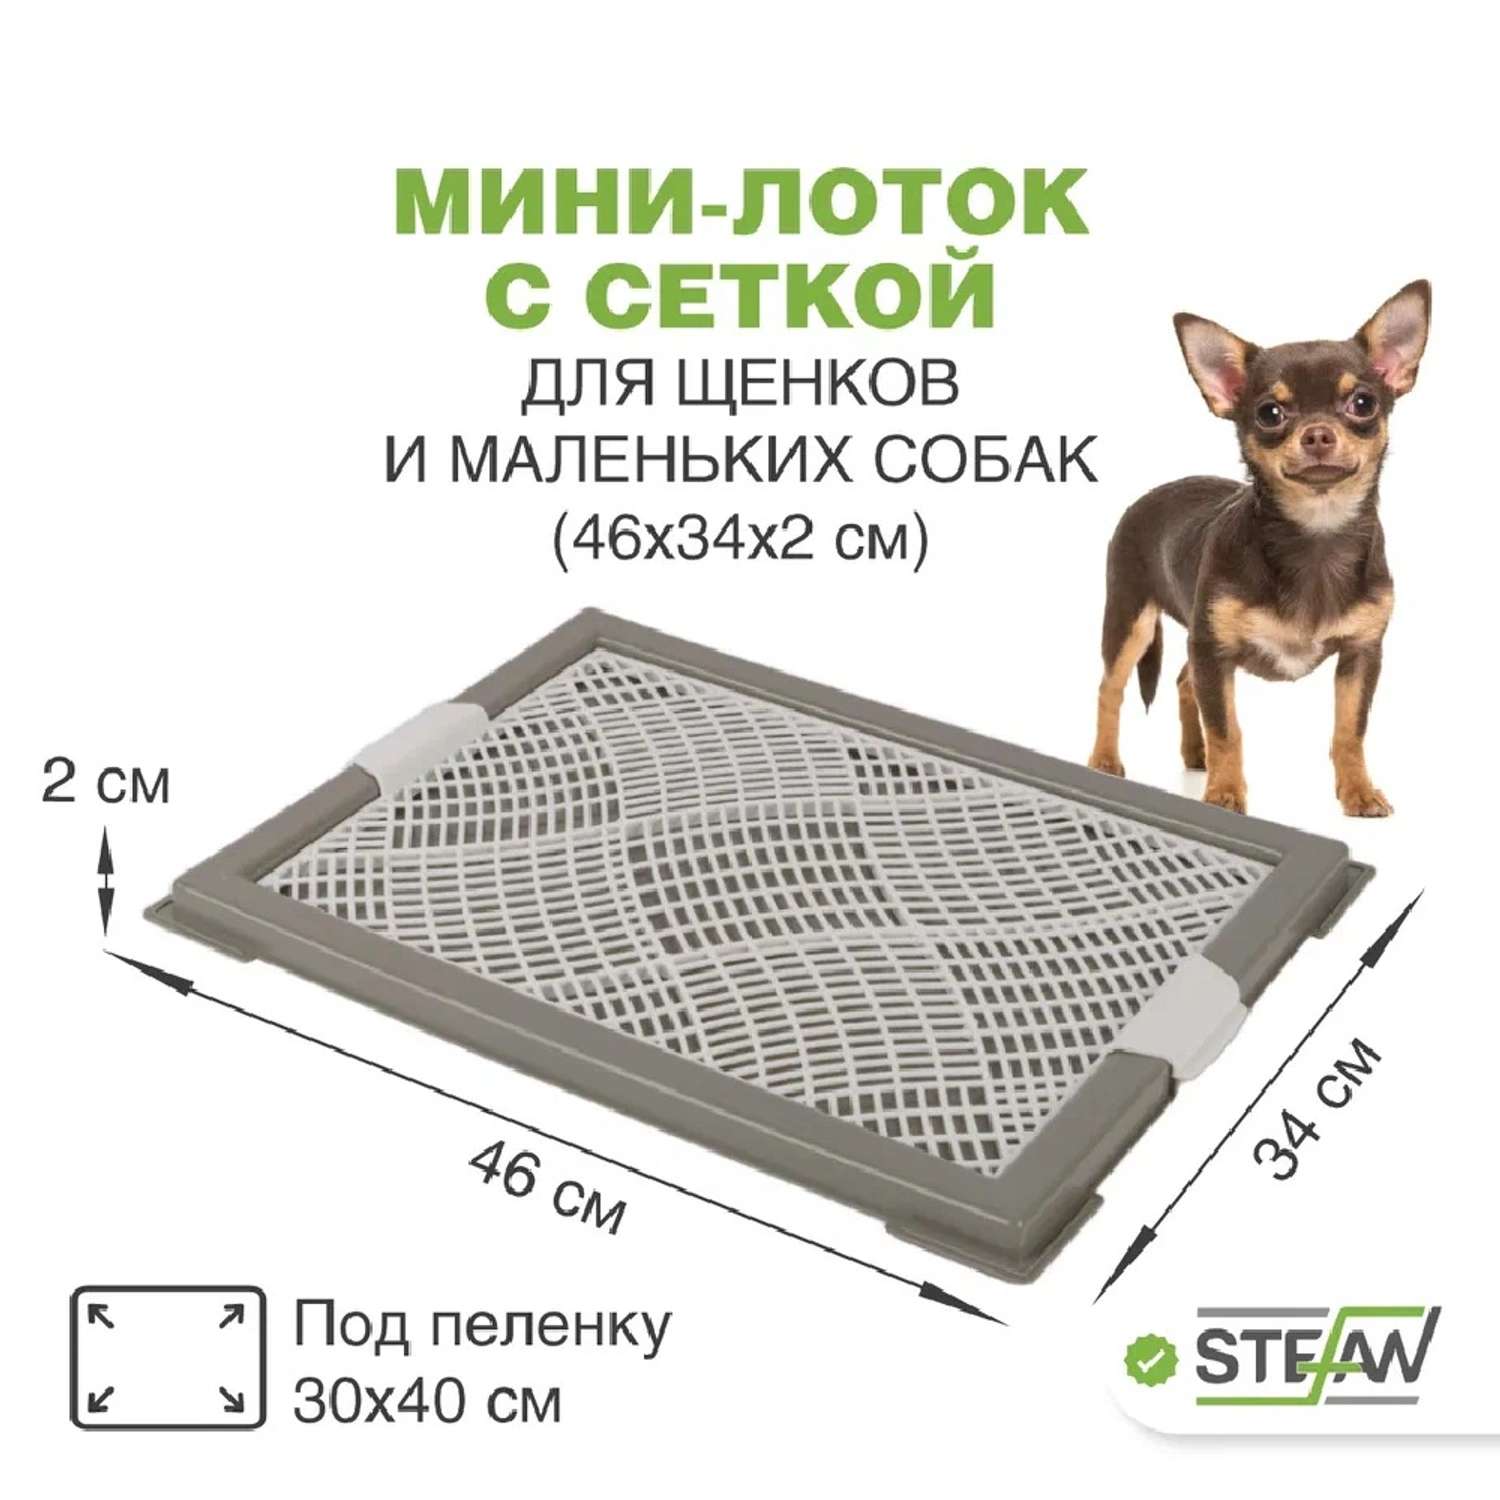 обувь для собак - самый большой выбор товаров для домашних любимцев по всей Украине